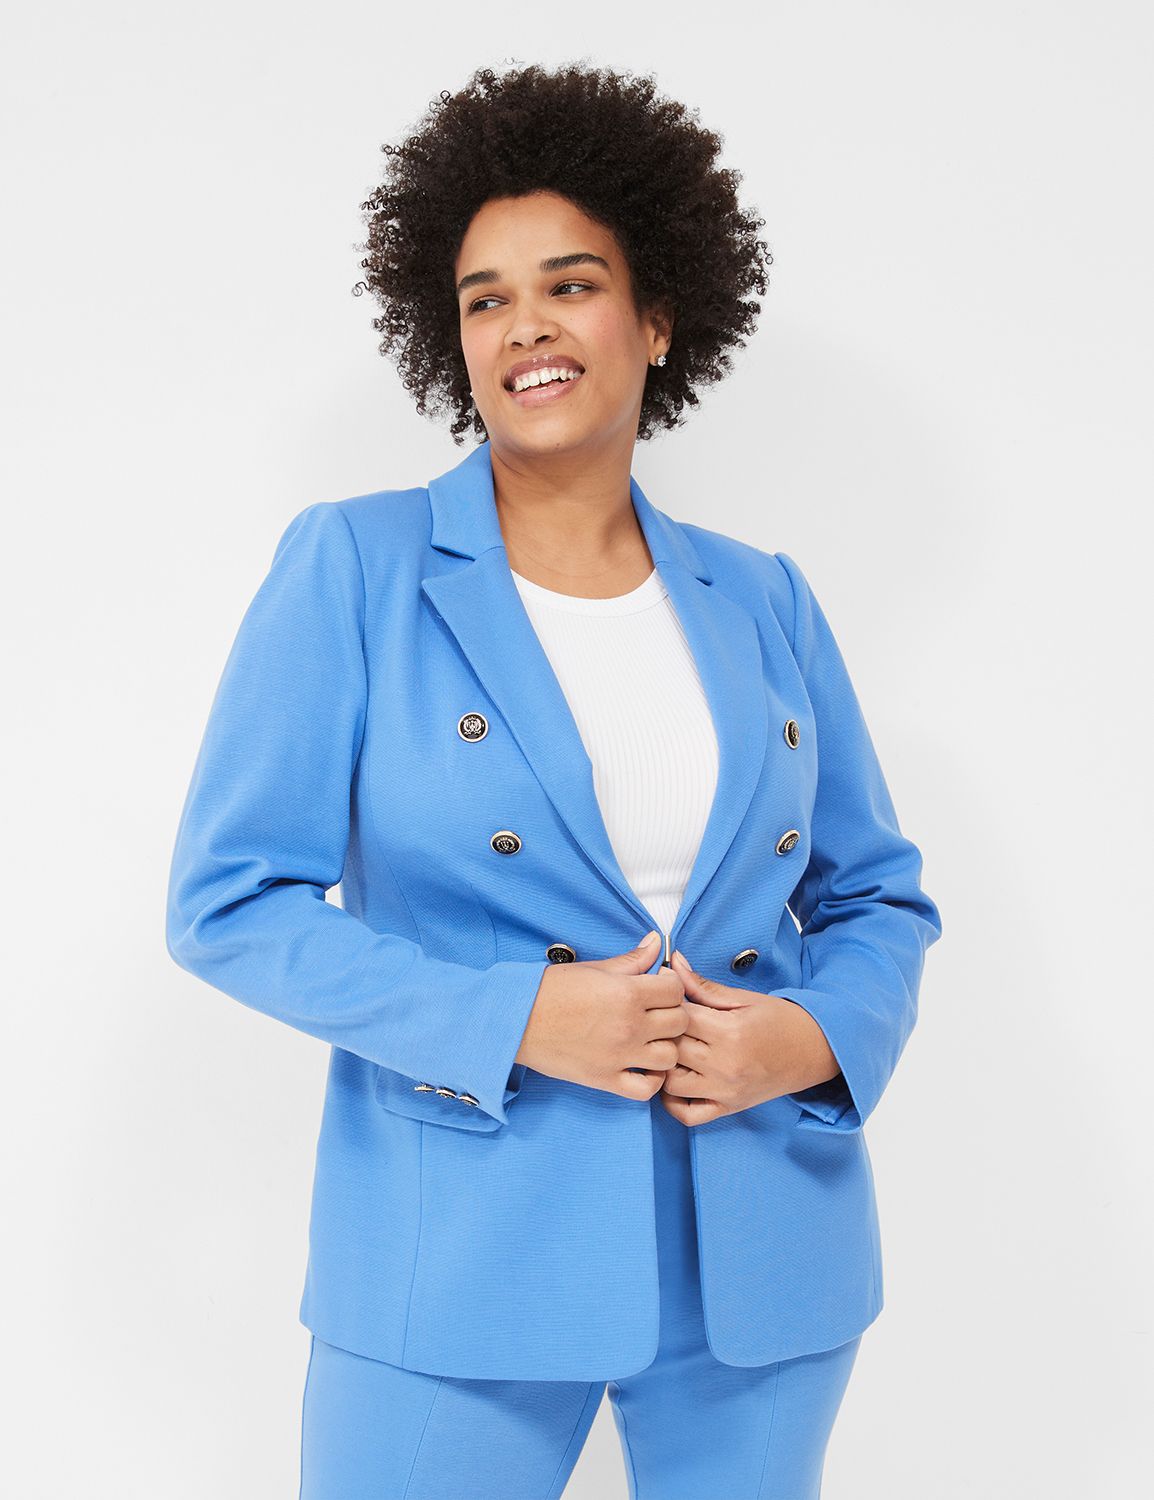 Elegant Royal Blue Women's Business Suit - Customizable Sizes